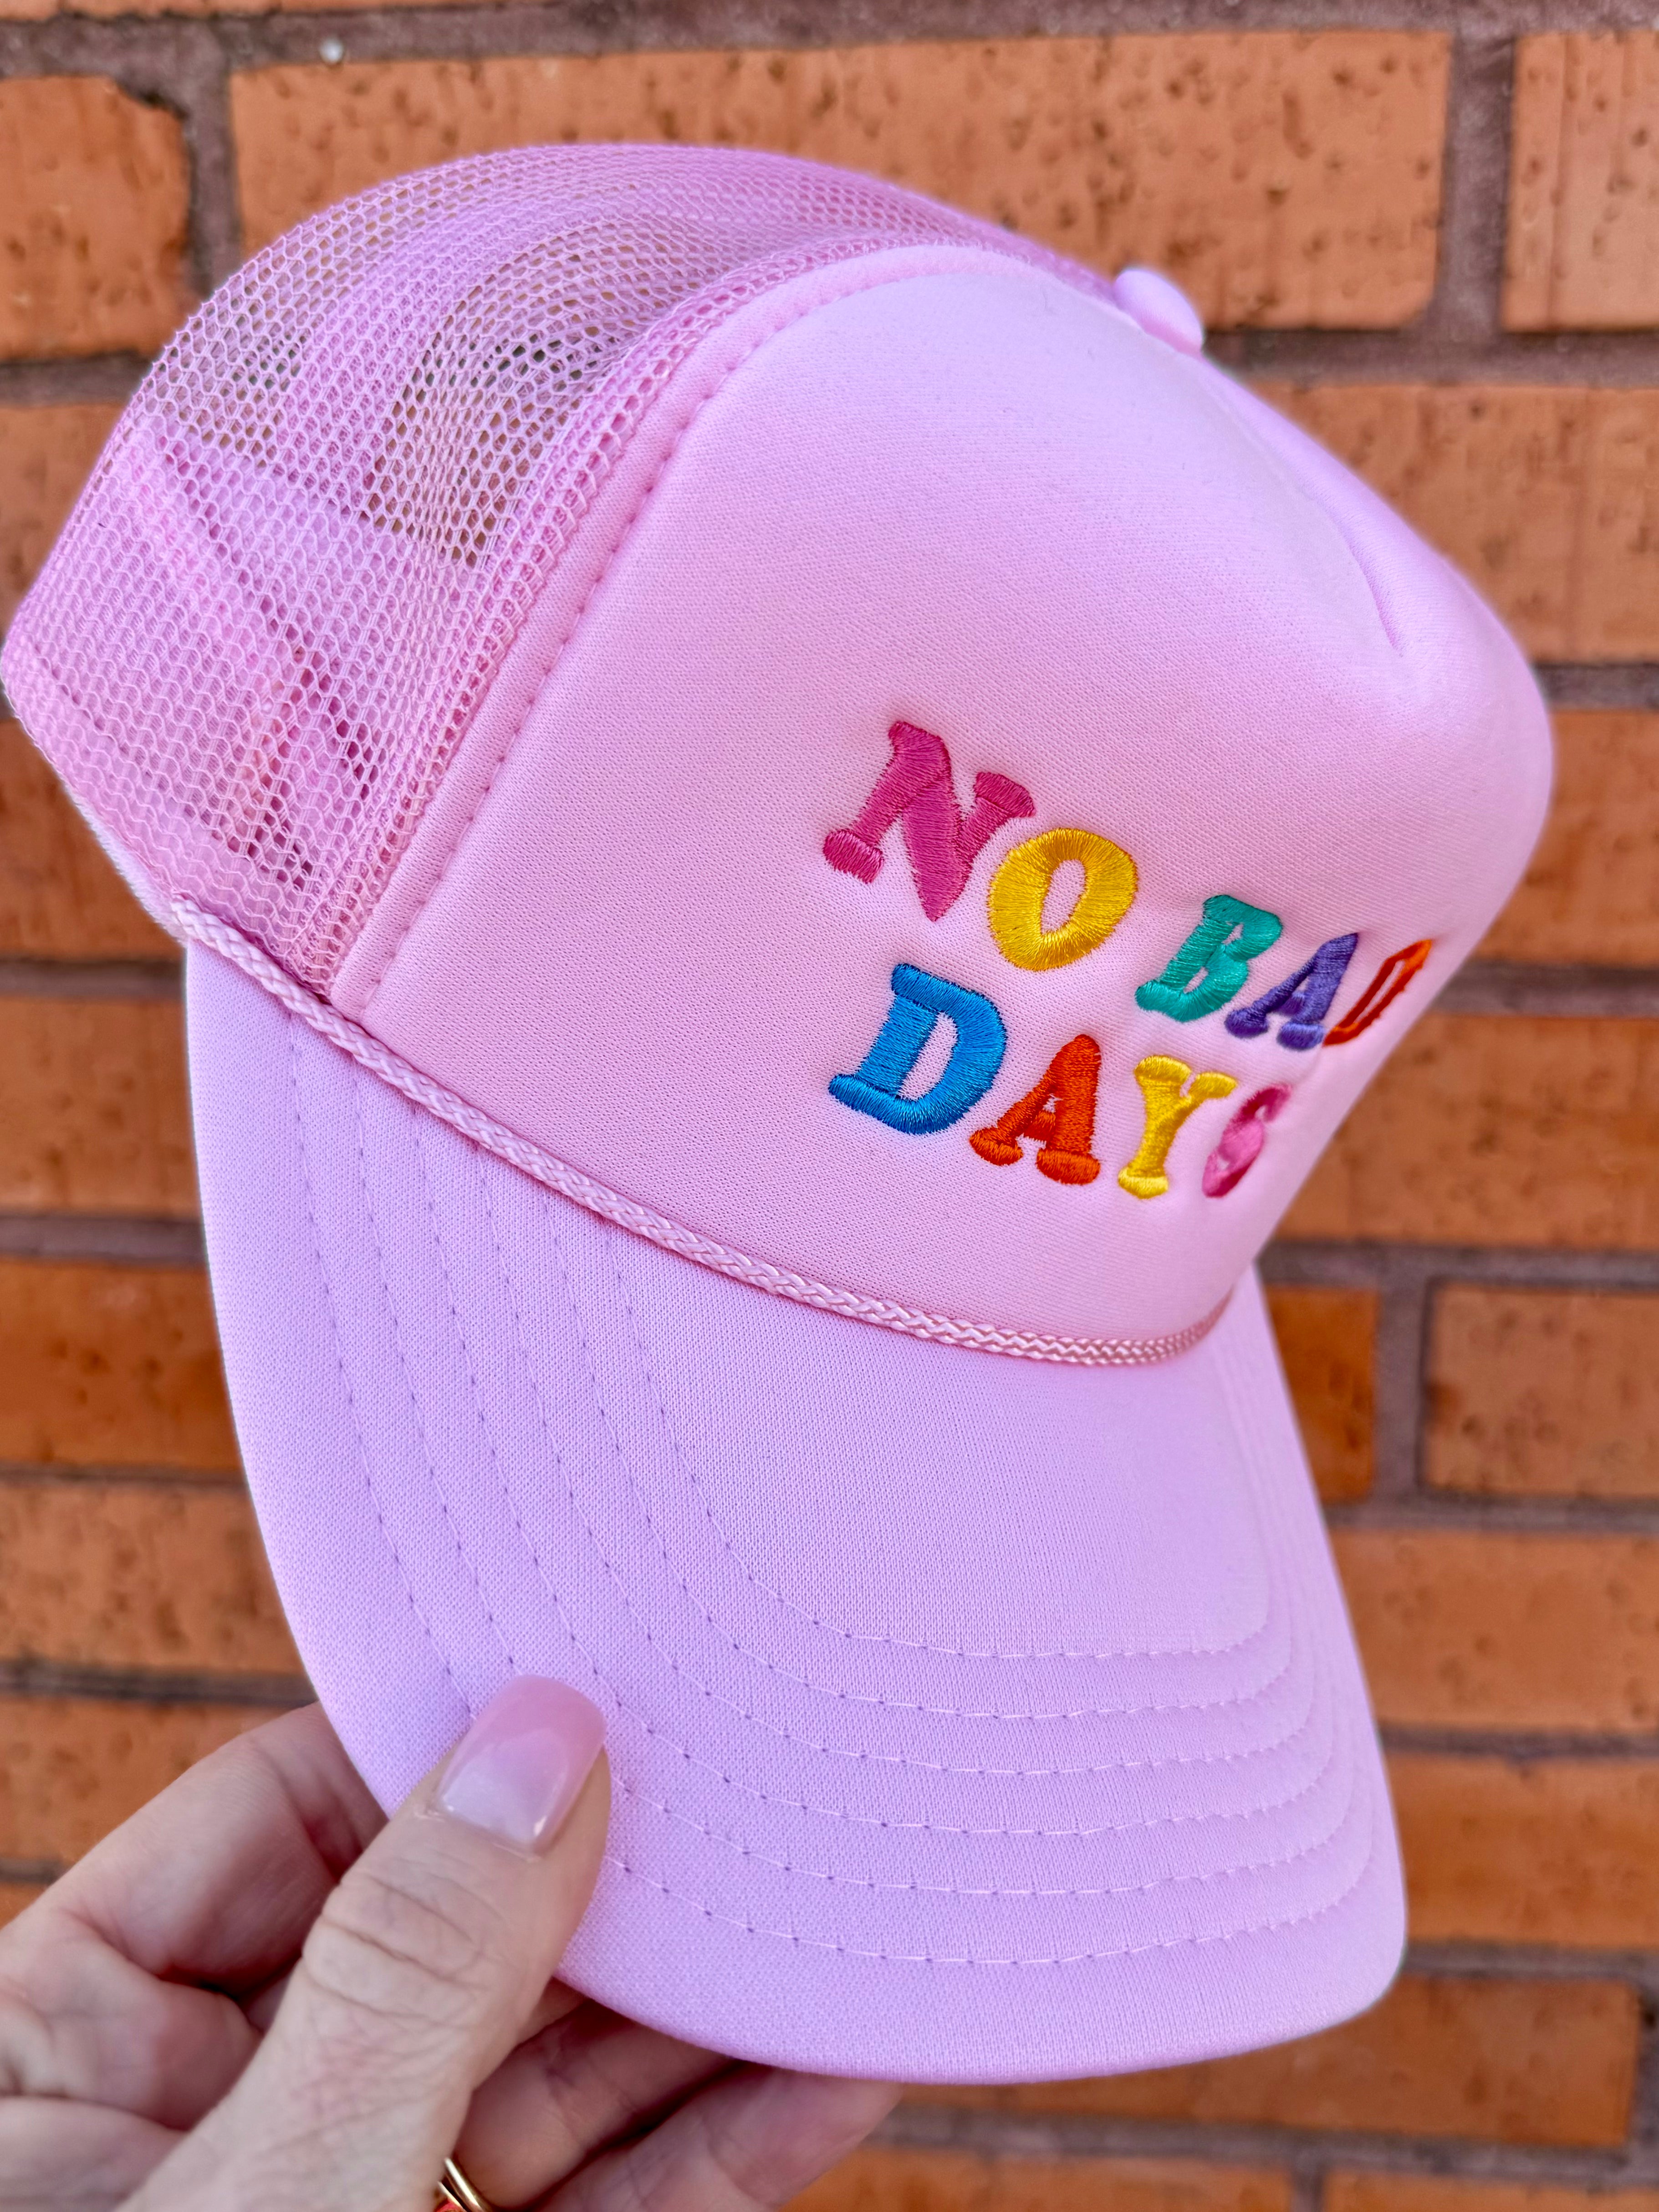 No Bad Days Trucker Hat